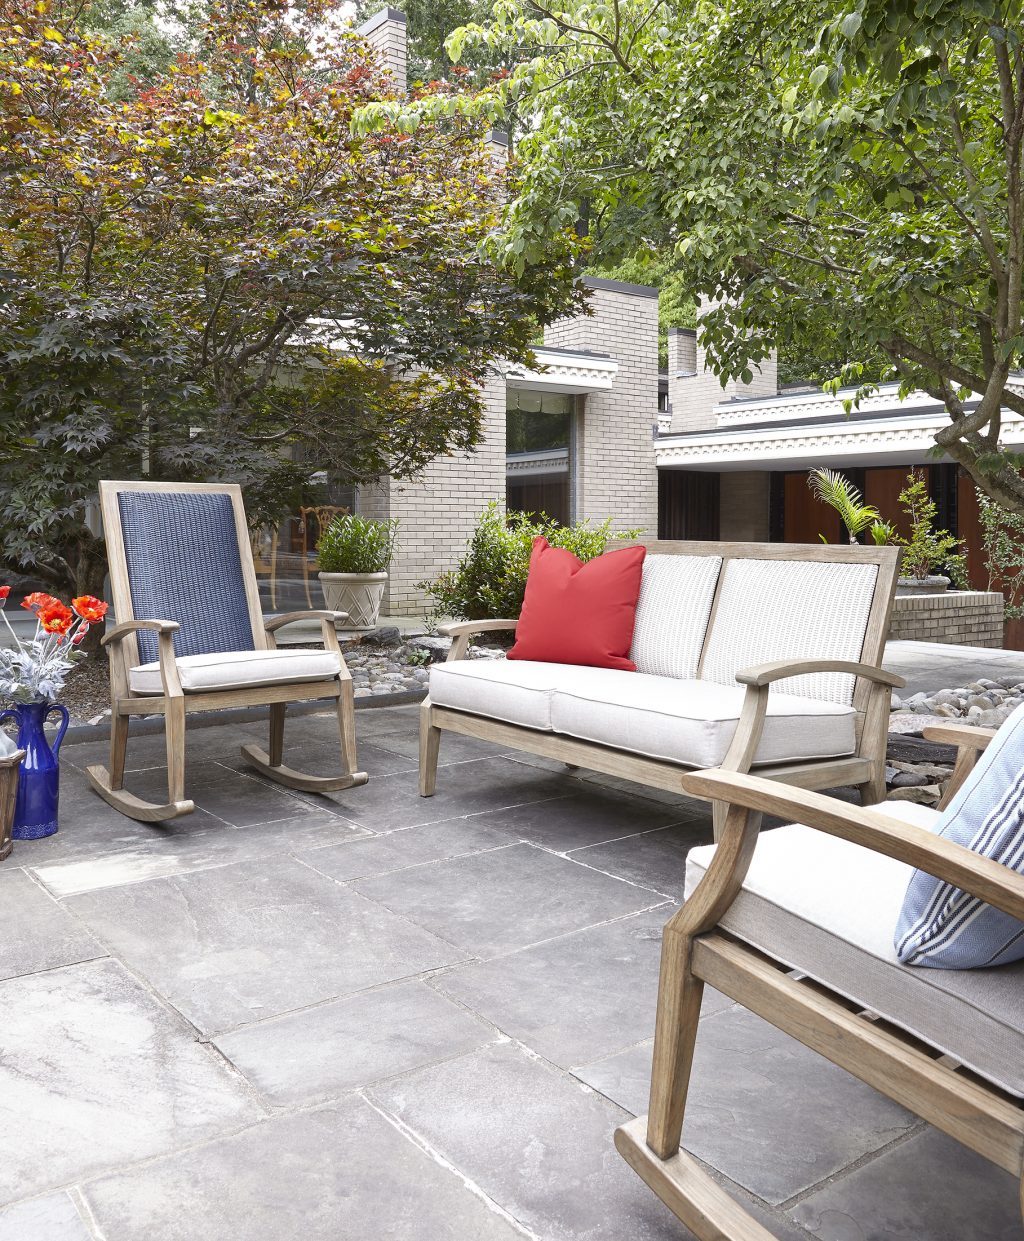 Lloyd flankers wildwood teak luxury outdoor living by hausers patio